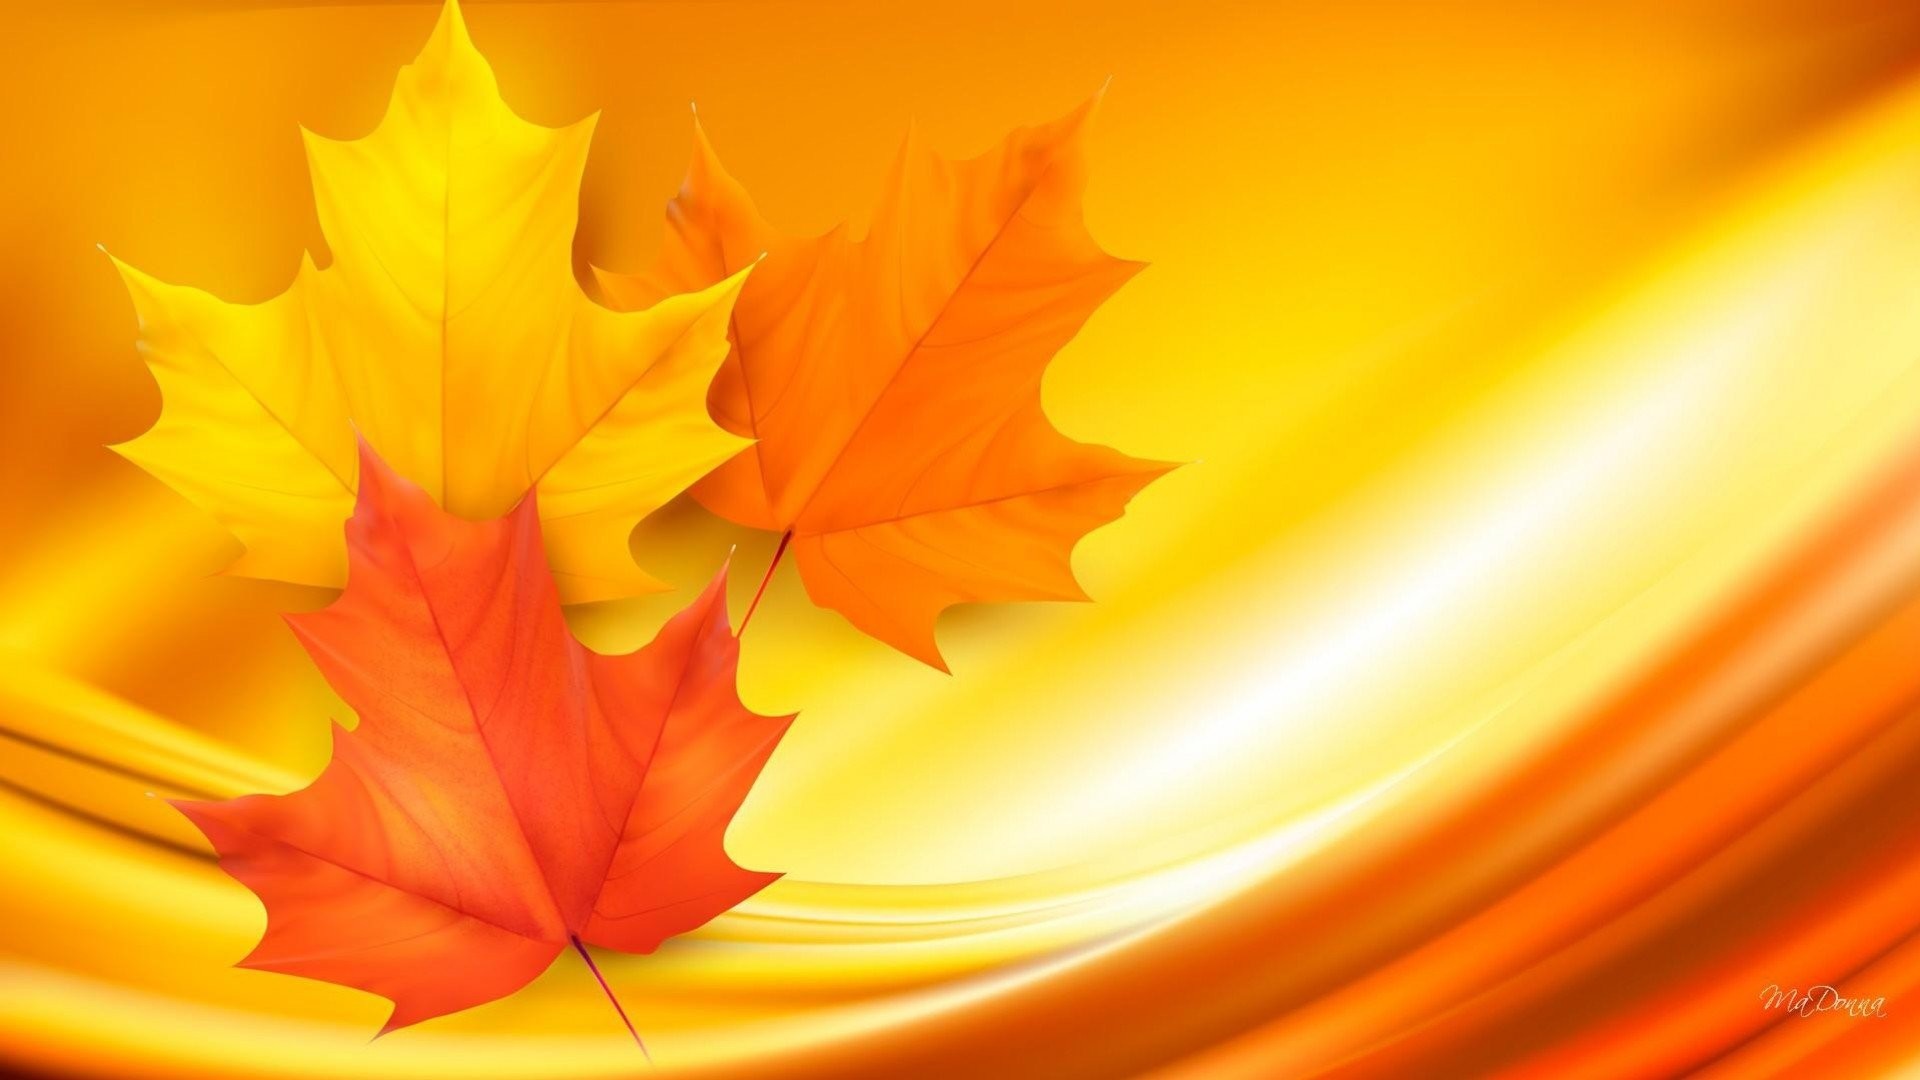 1920x1080 Artistic - Fall Artistic Leaf Maple Leaf Orange Yellow Wallpaper